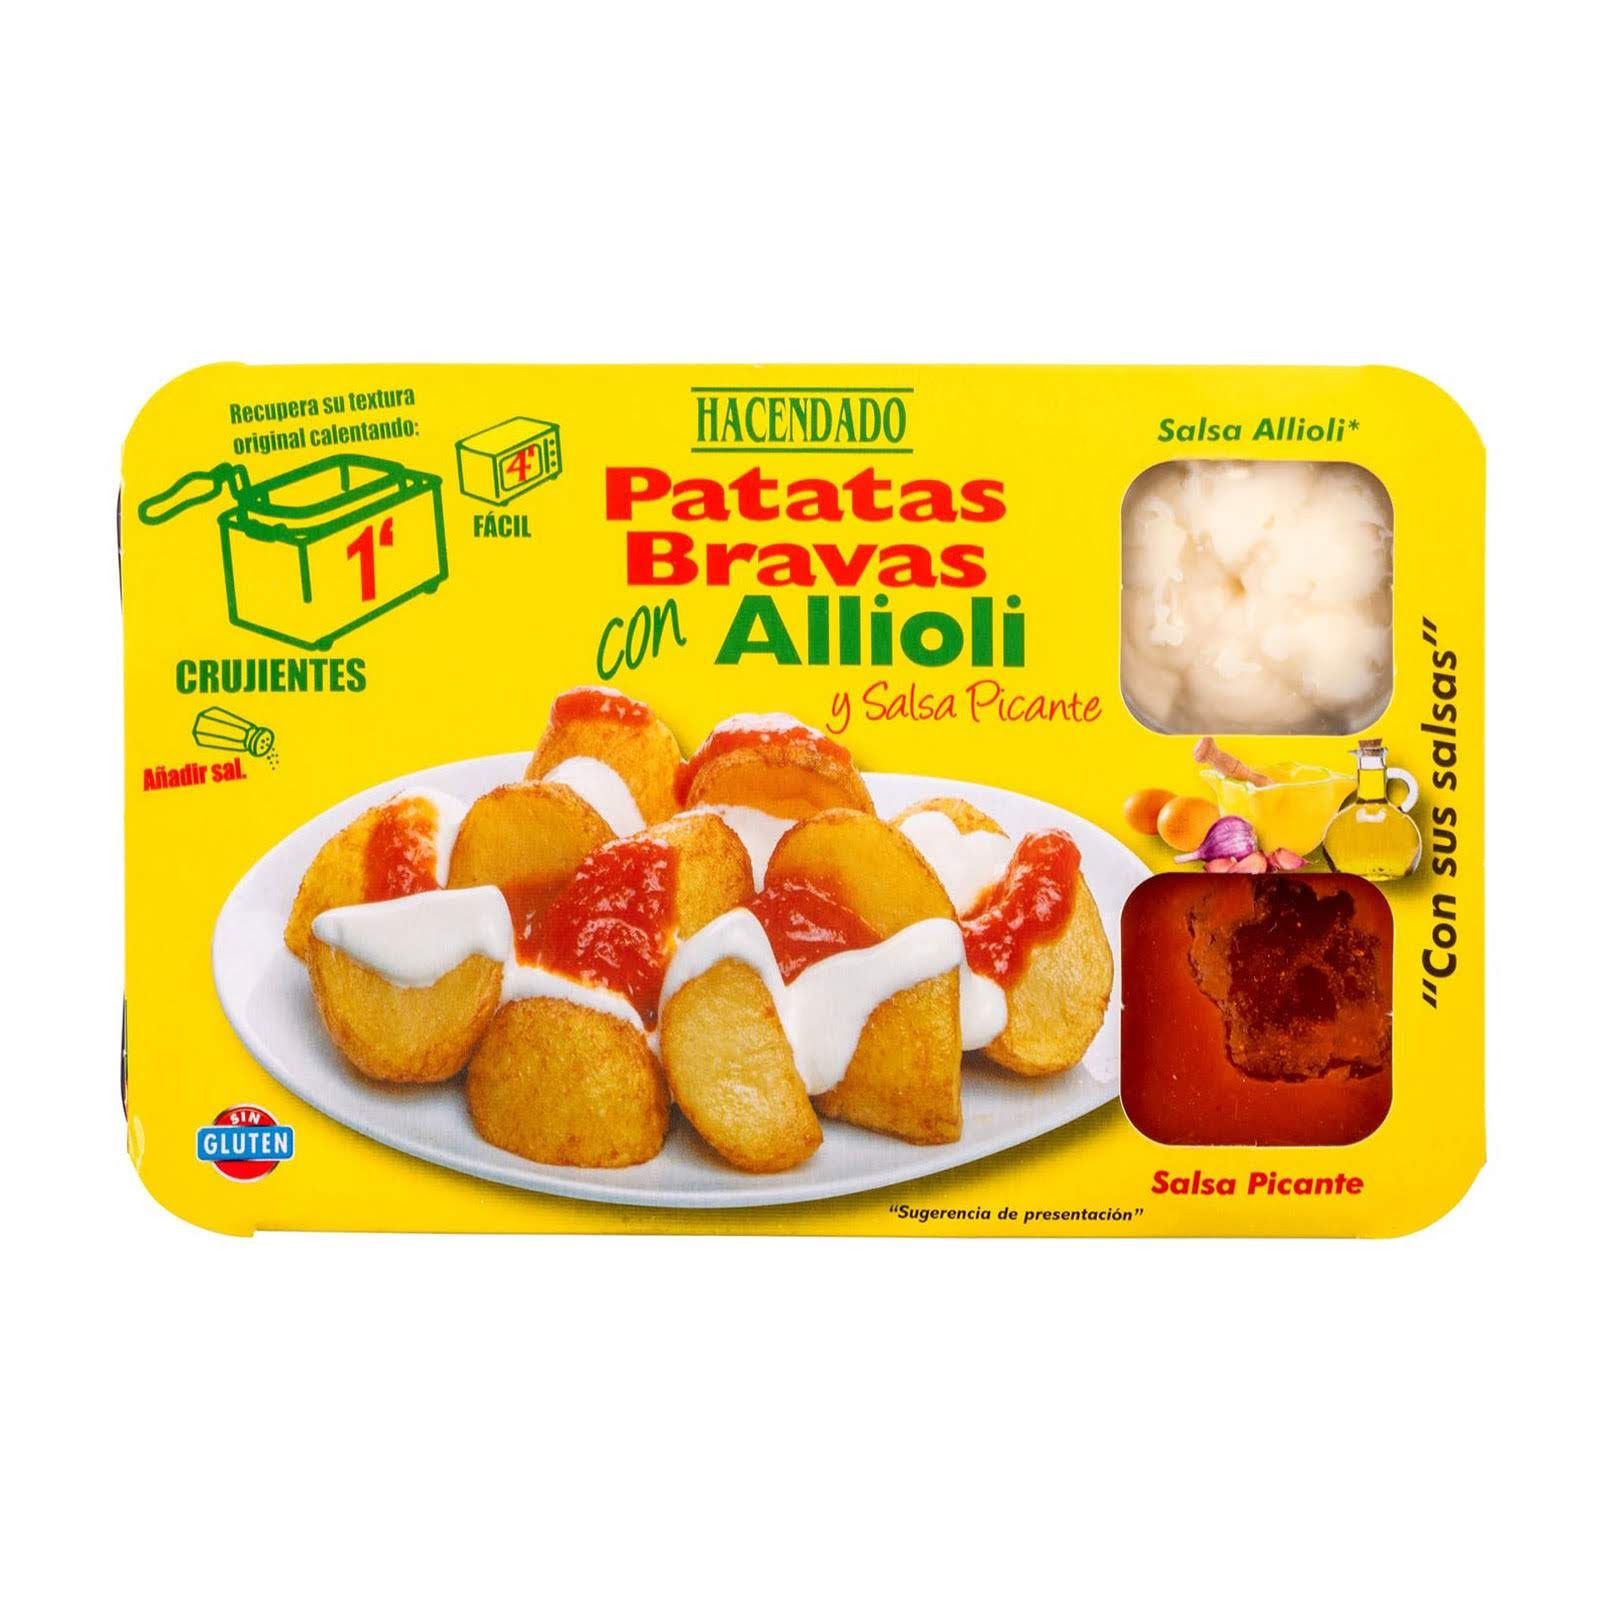 patatas-bravas-con-allioli-y-salsa-picante-hacendado-mercadona-1.jpg